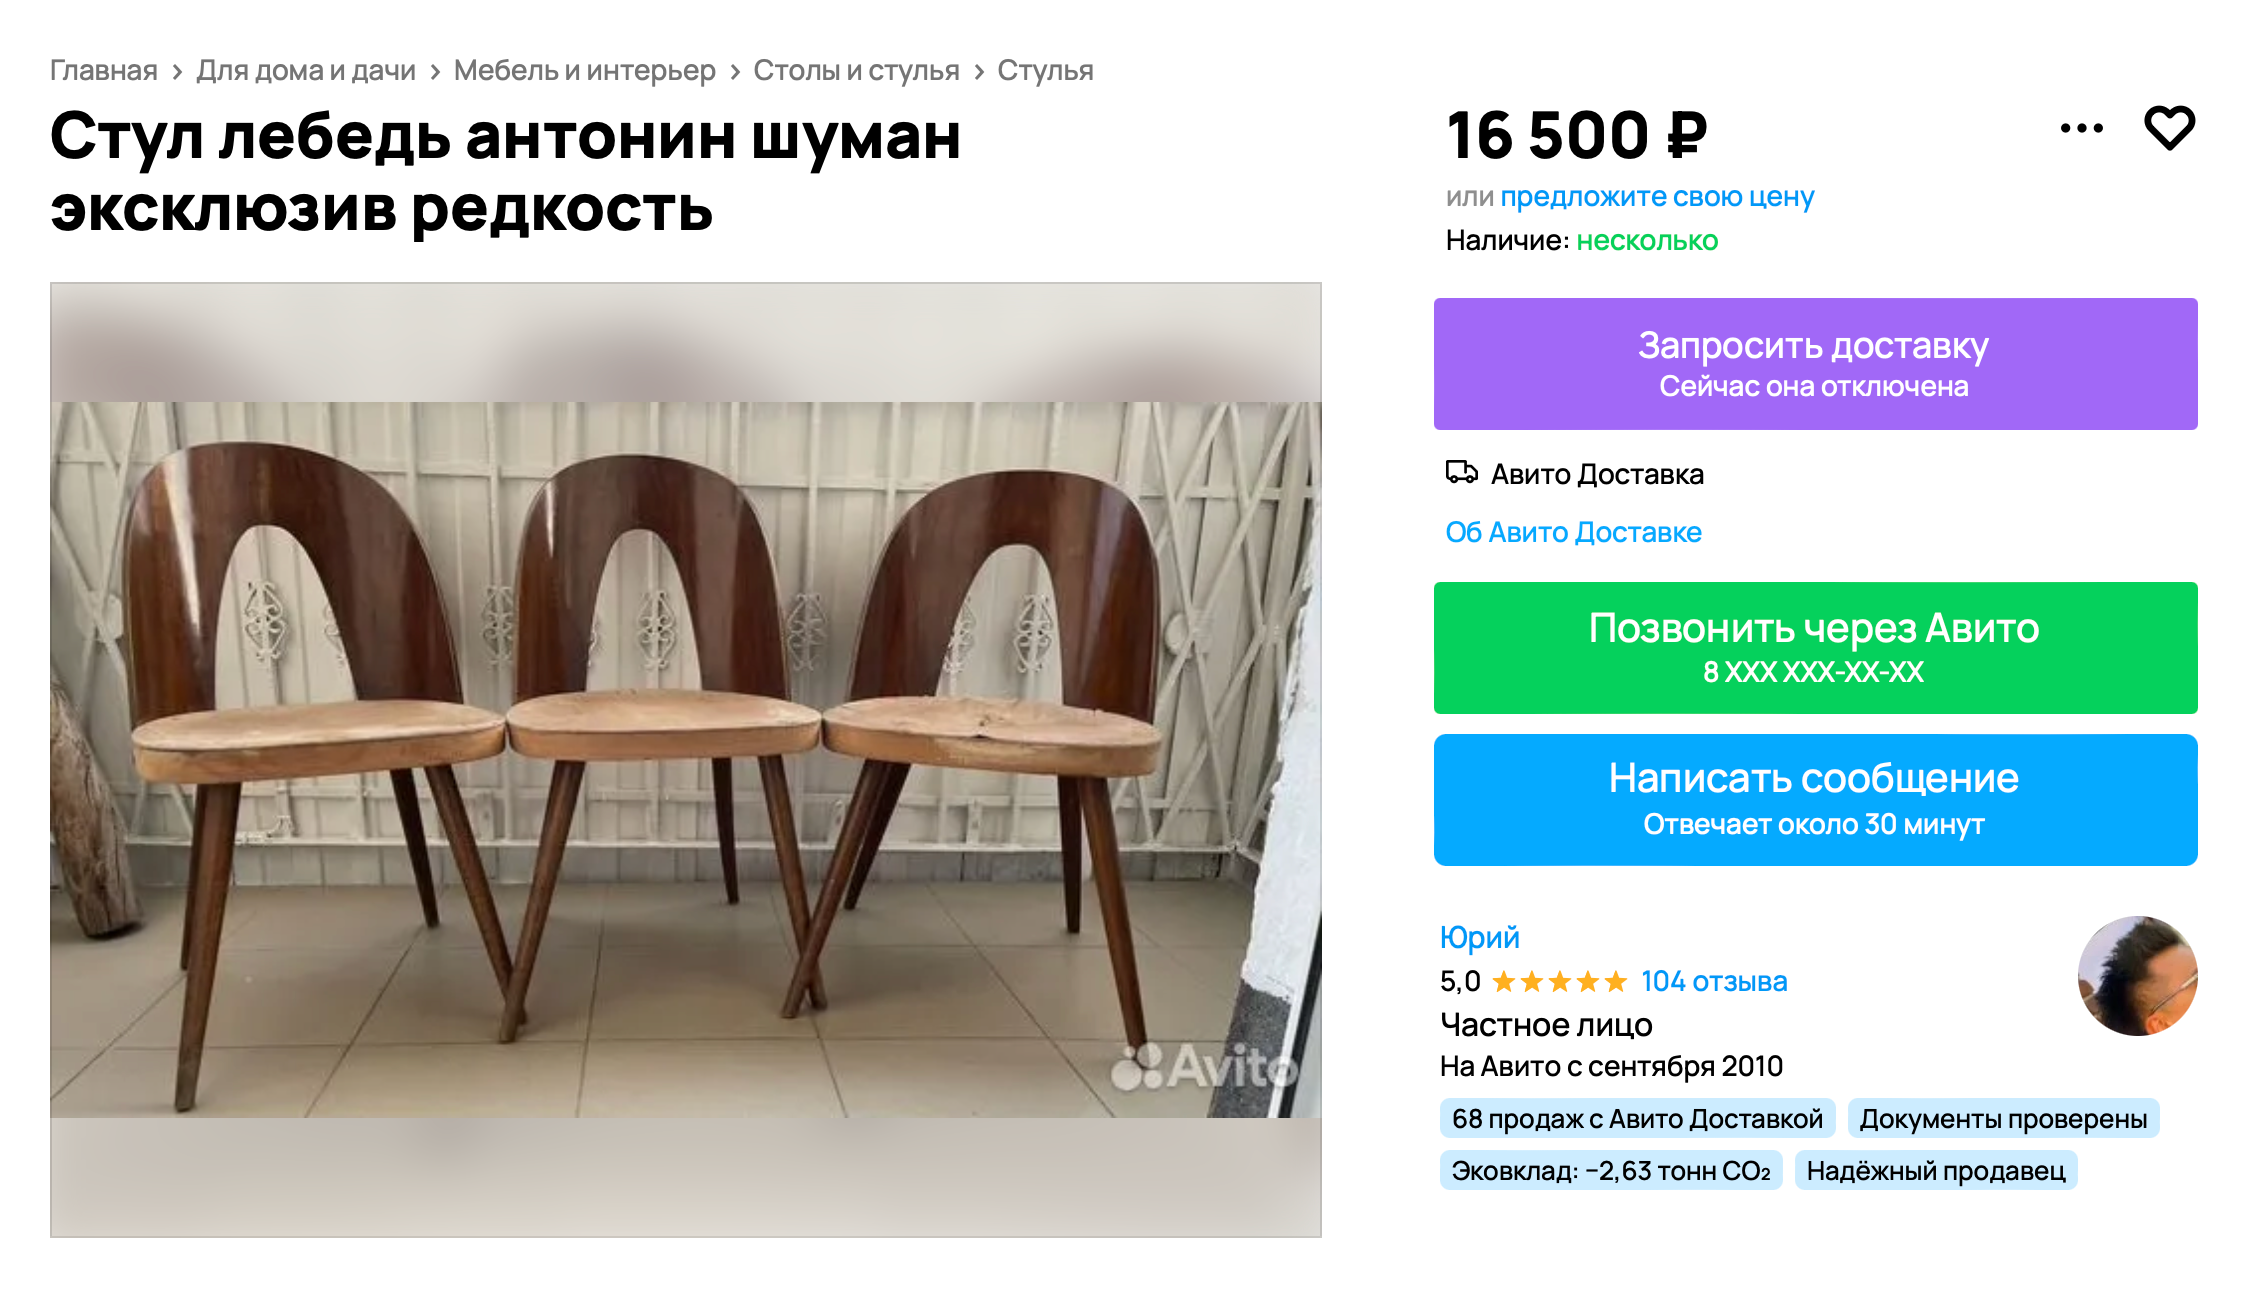 Стулья под реставрацию стоят как новые, особенно если это дизайнерские модели, например стулья дизайнера Антонина Шумана. Благодаря красивой изогнутой спинке они также известны как «лебеди». Источник: avito.ru